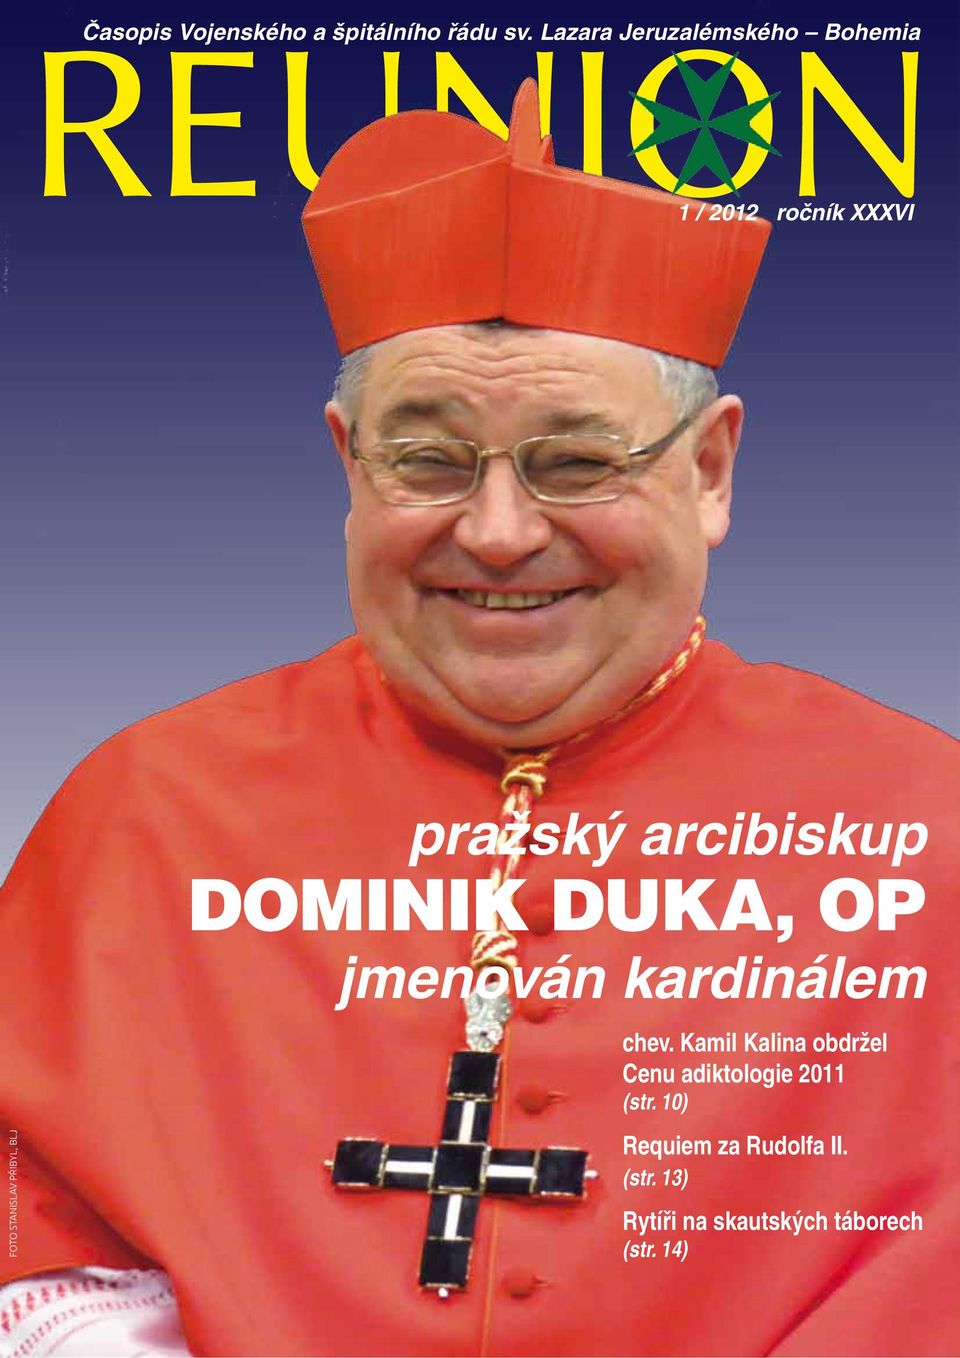 kardinálem FOTO STANISLAV PŘIBYL, BLJ chev.